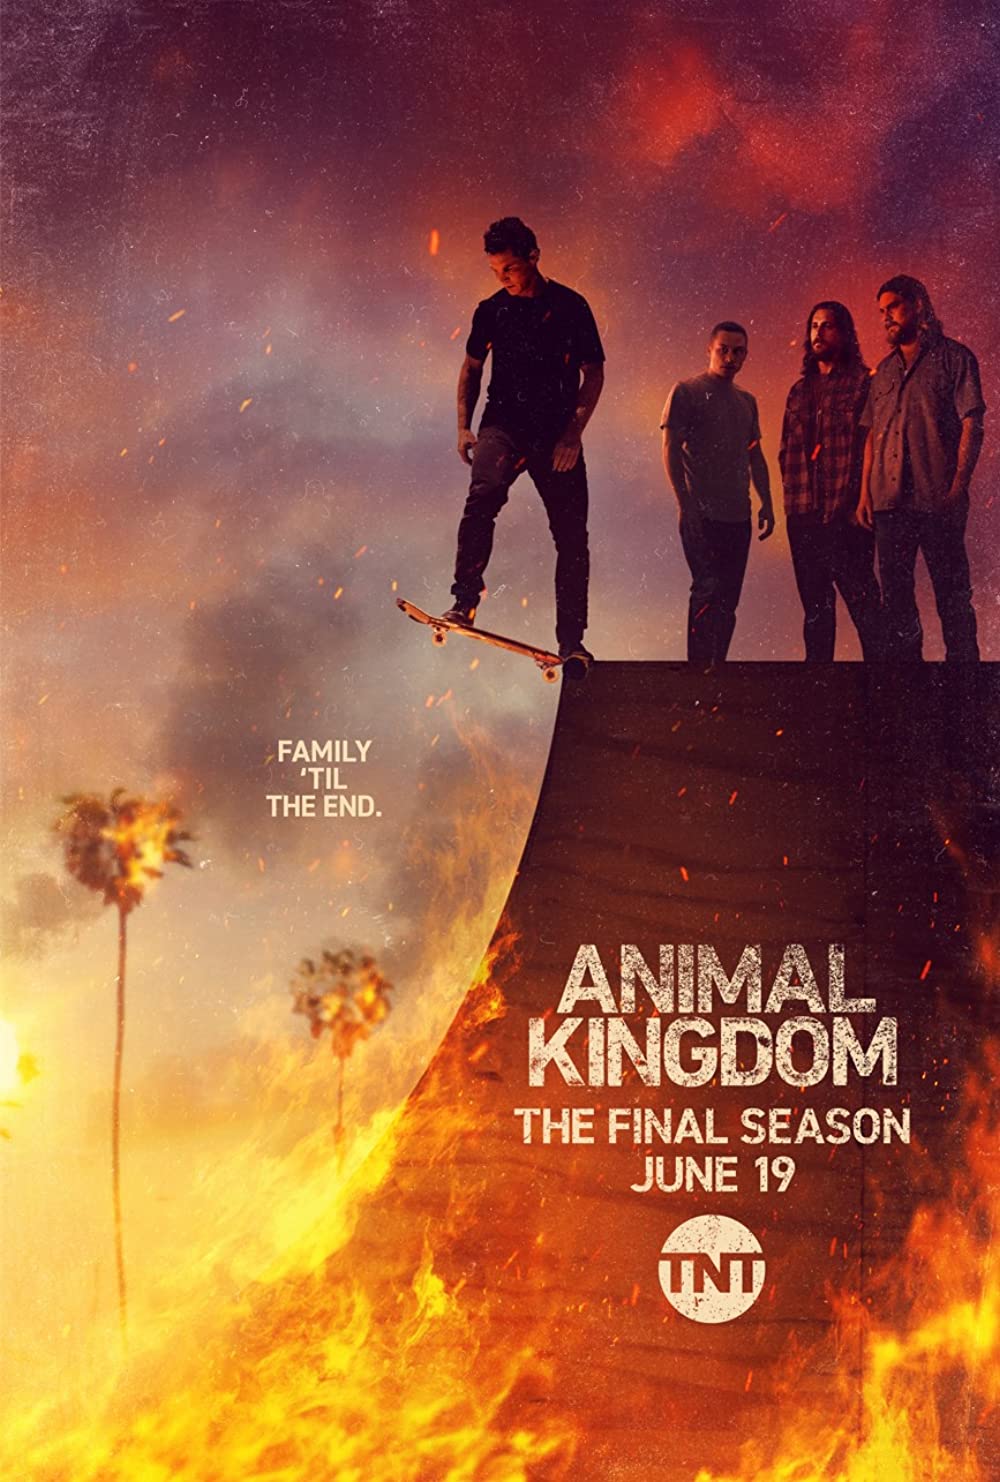 ดูหนังออนไลน์ฟรี Animal Kingdom Season 1 EP.4 แอนนิเมิล คิงด้อม ซีซั่น 1 ตอนที่ 4 (ซับไทย)